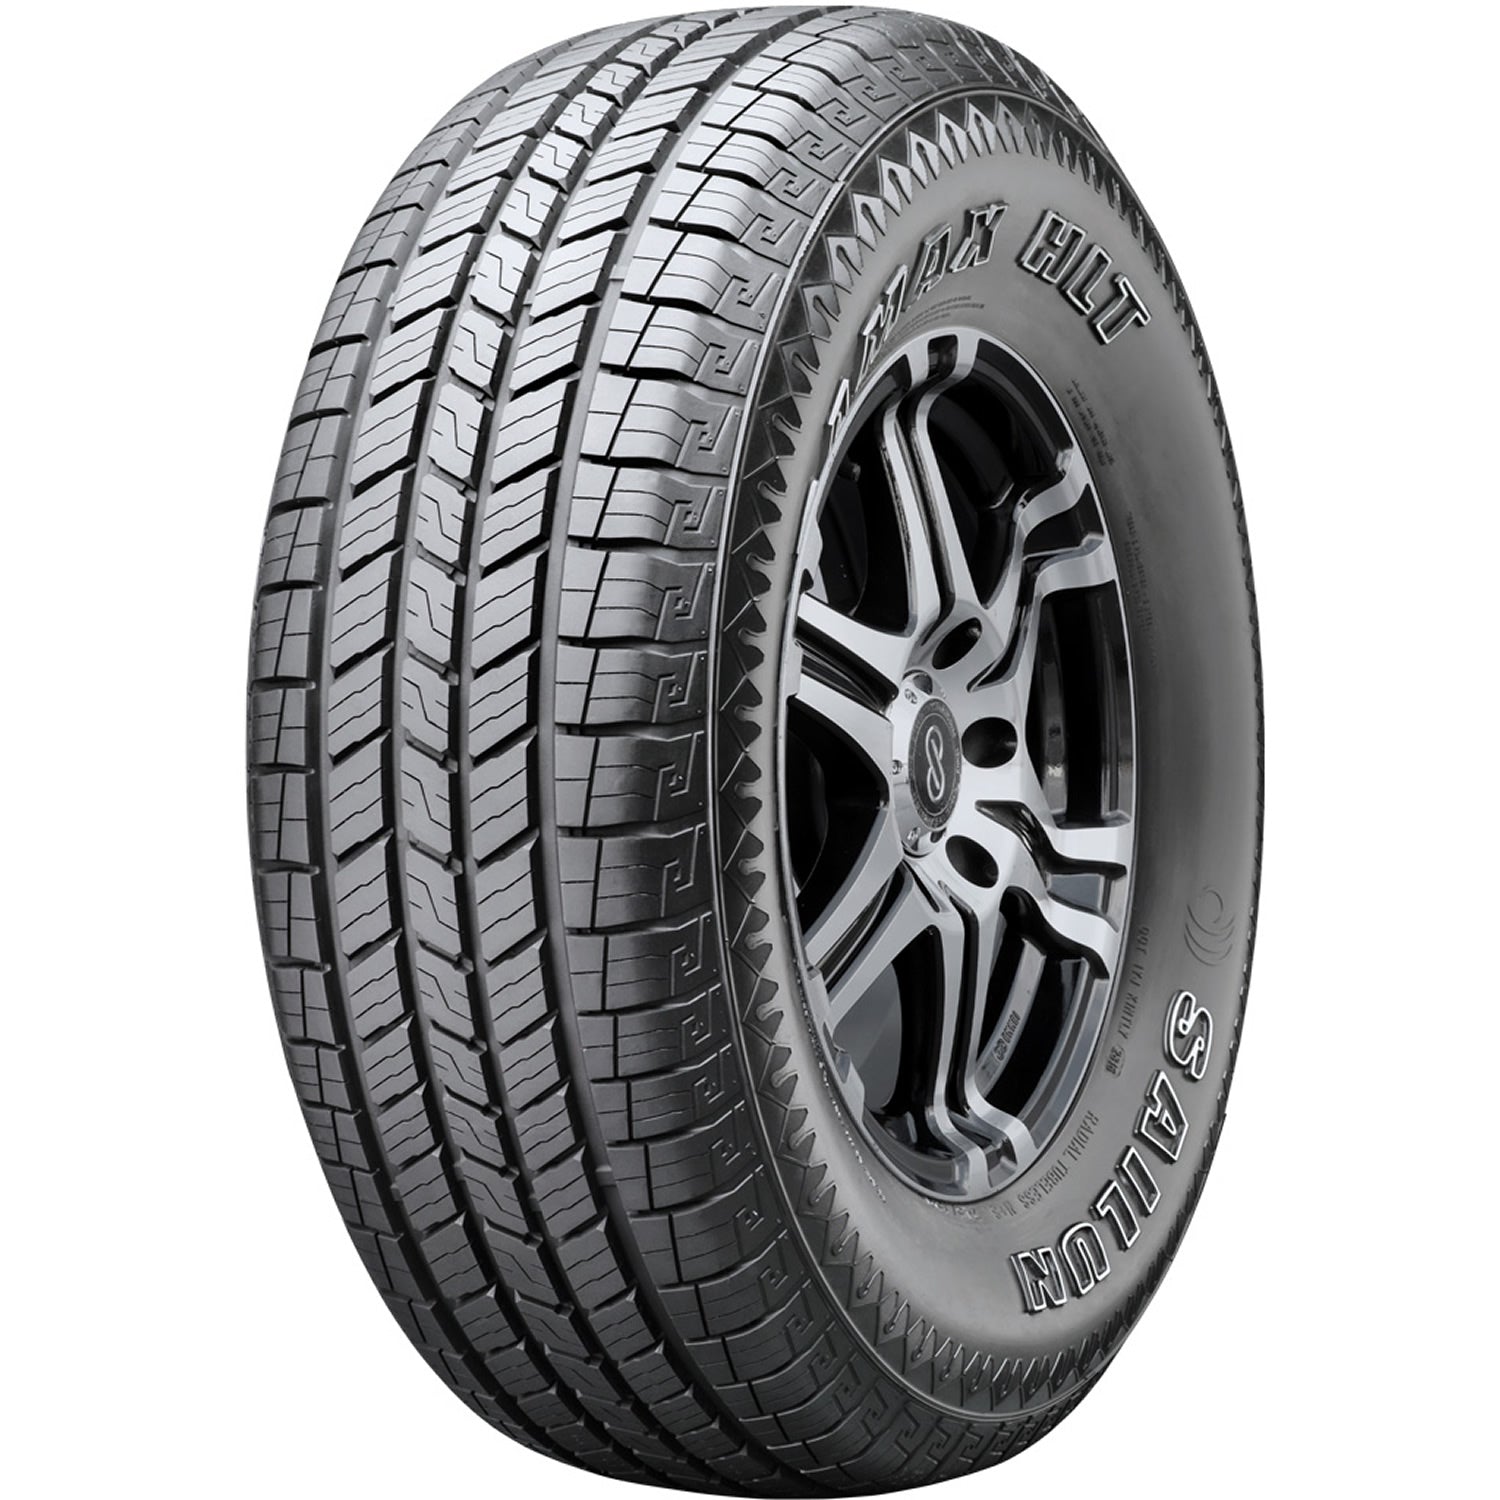 SAILUN TERRAMAX HLT 235/55R18 (28.2X9.7R 18) Tires